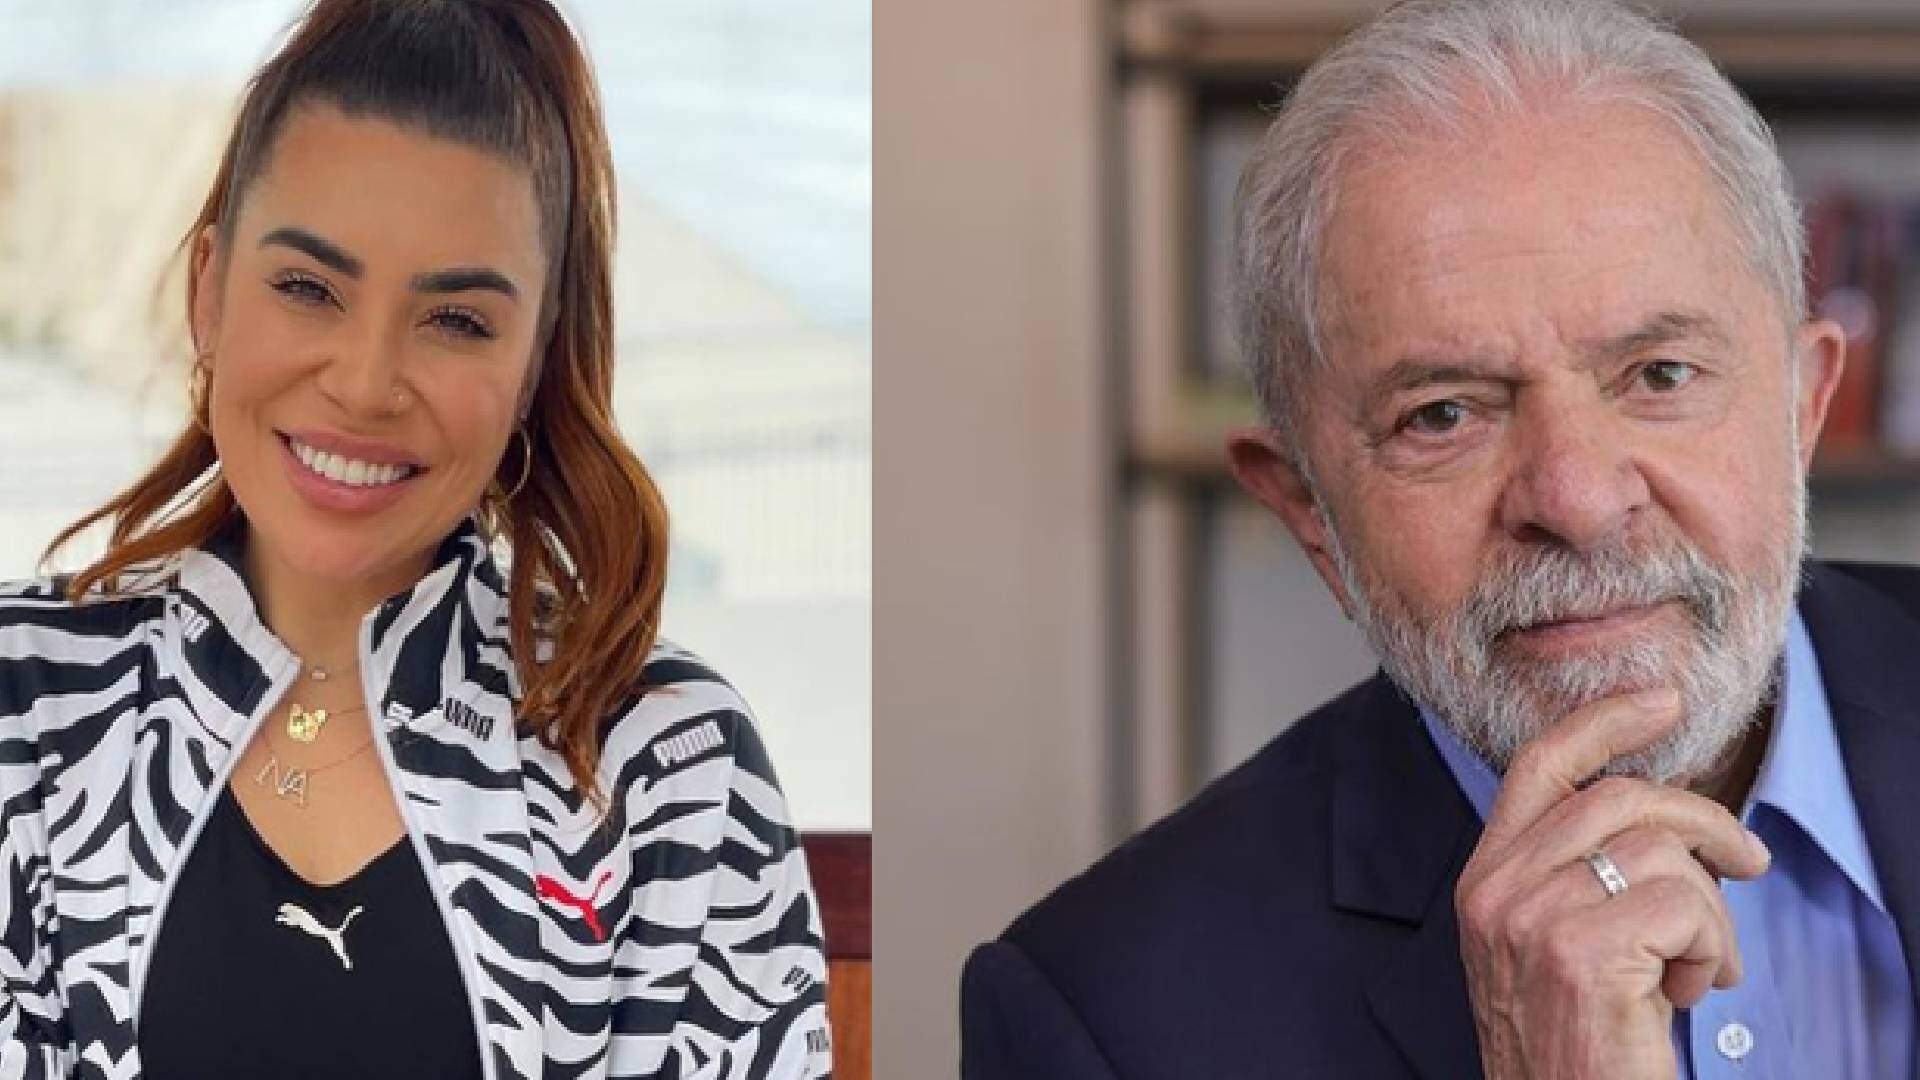 Web relembra vídeo de Naiara Azevedo debochando de Lula e gera polêmica - Metropolitana FM